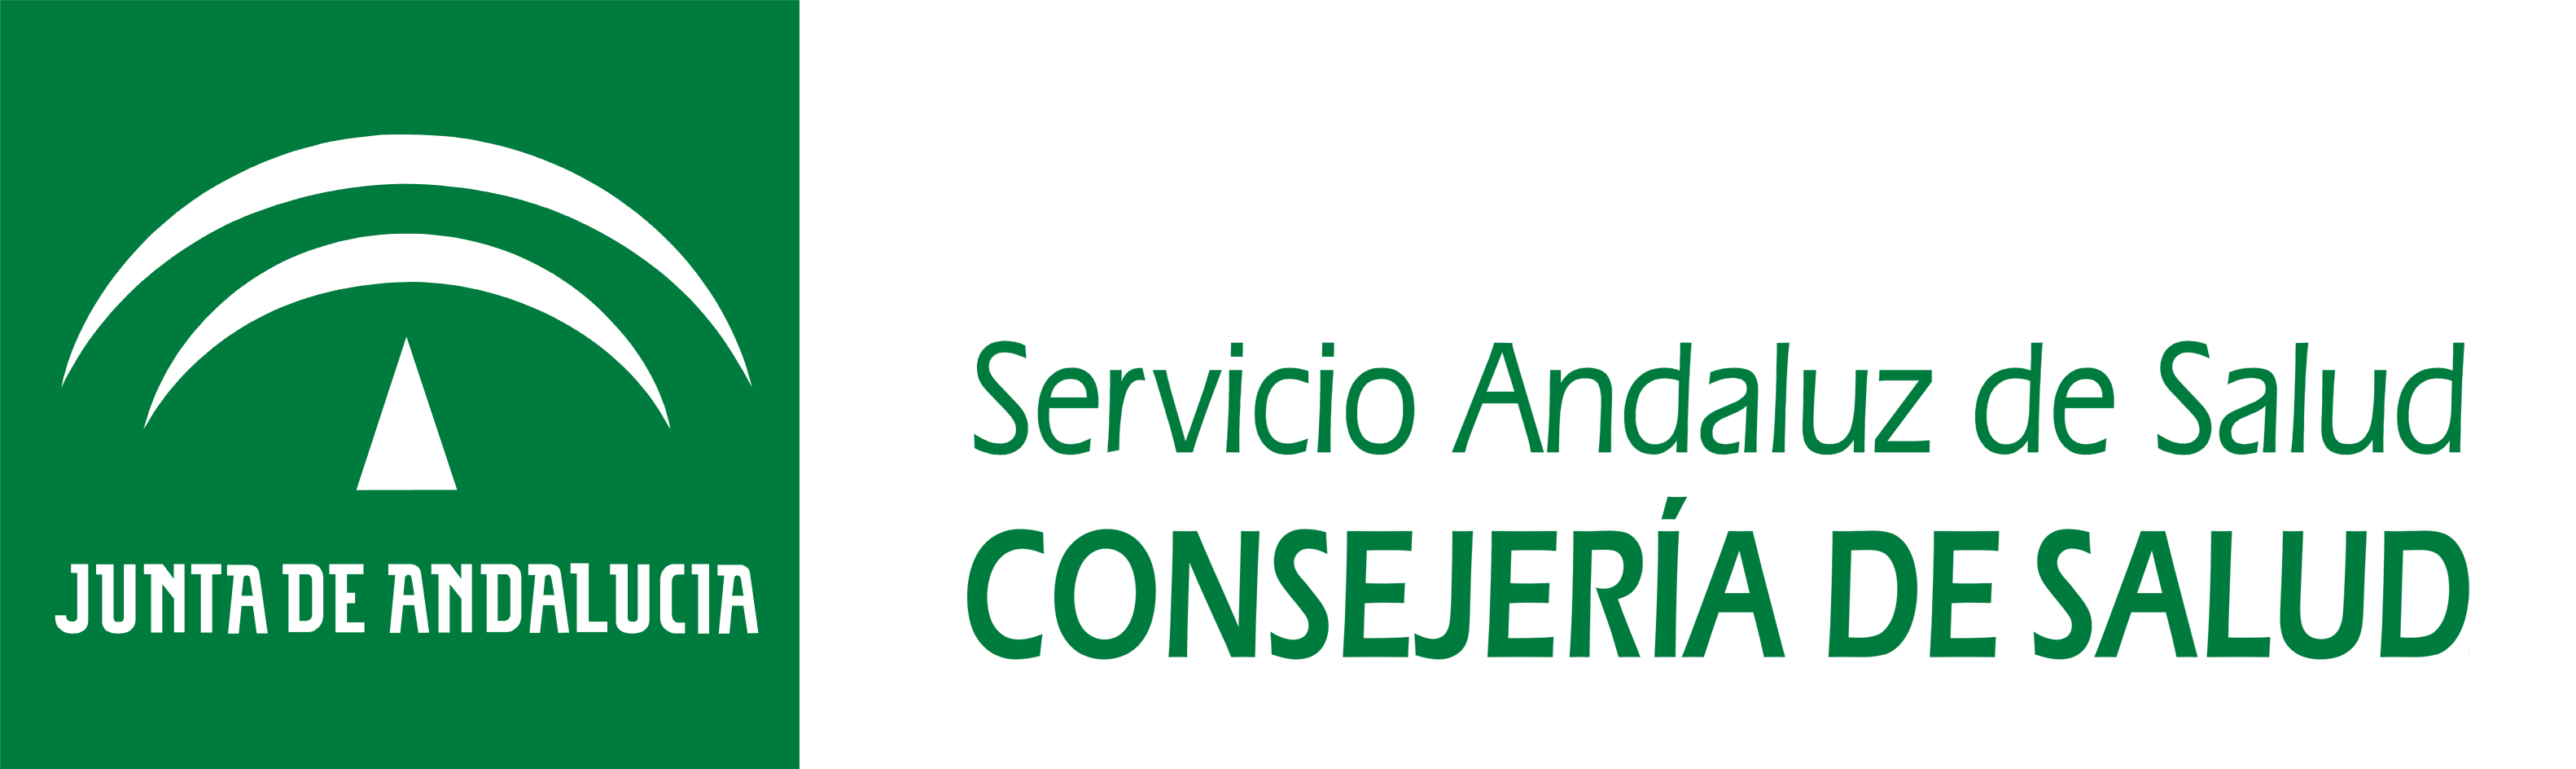 Consejería de Salud Junta de Andalucía